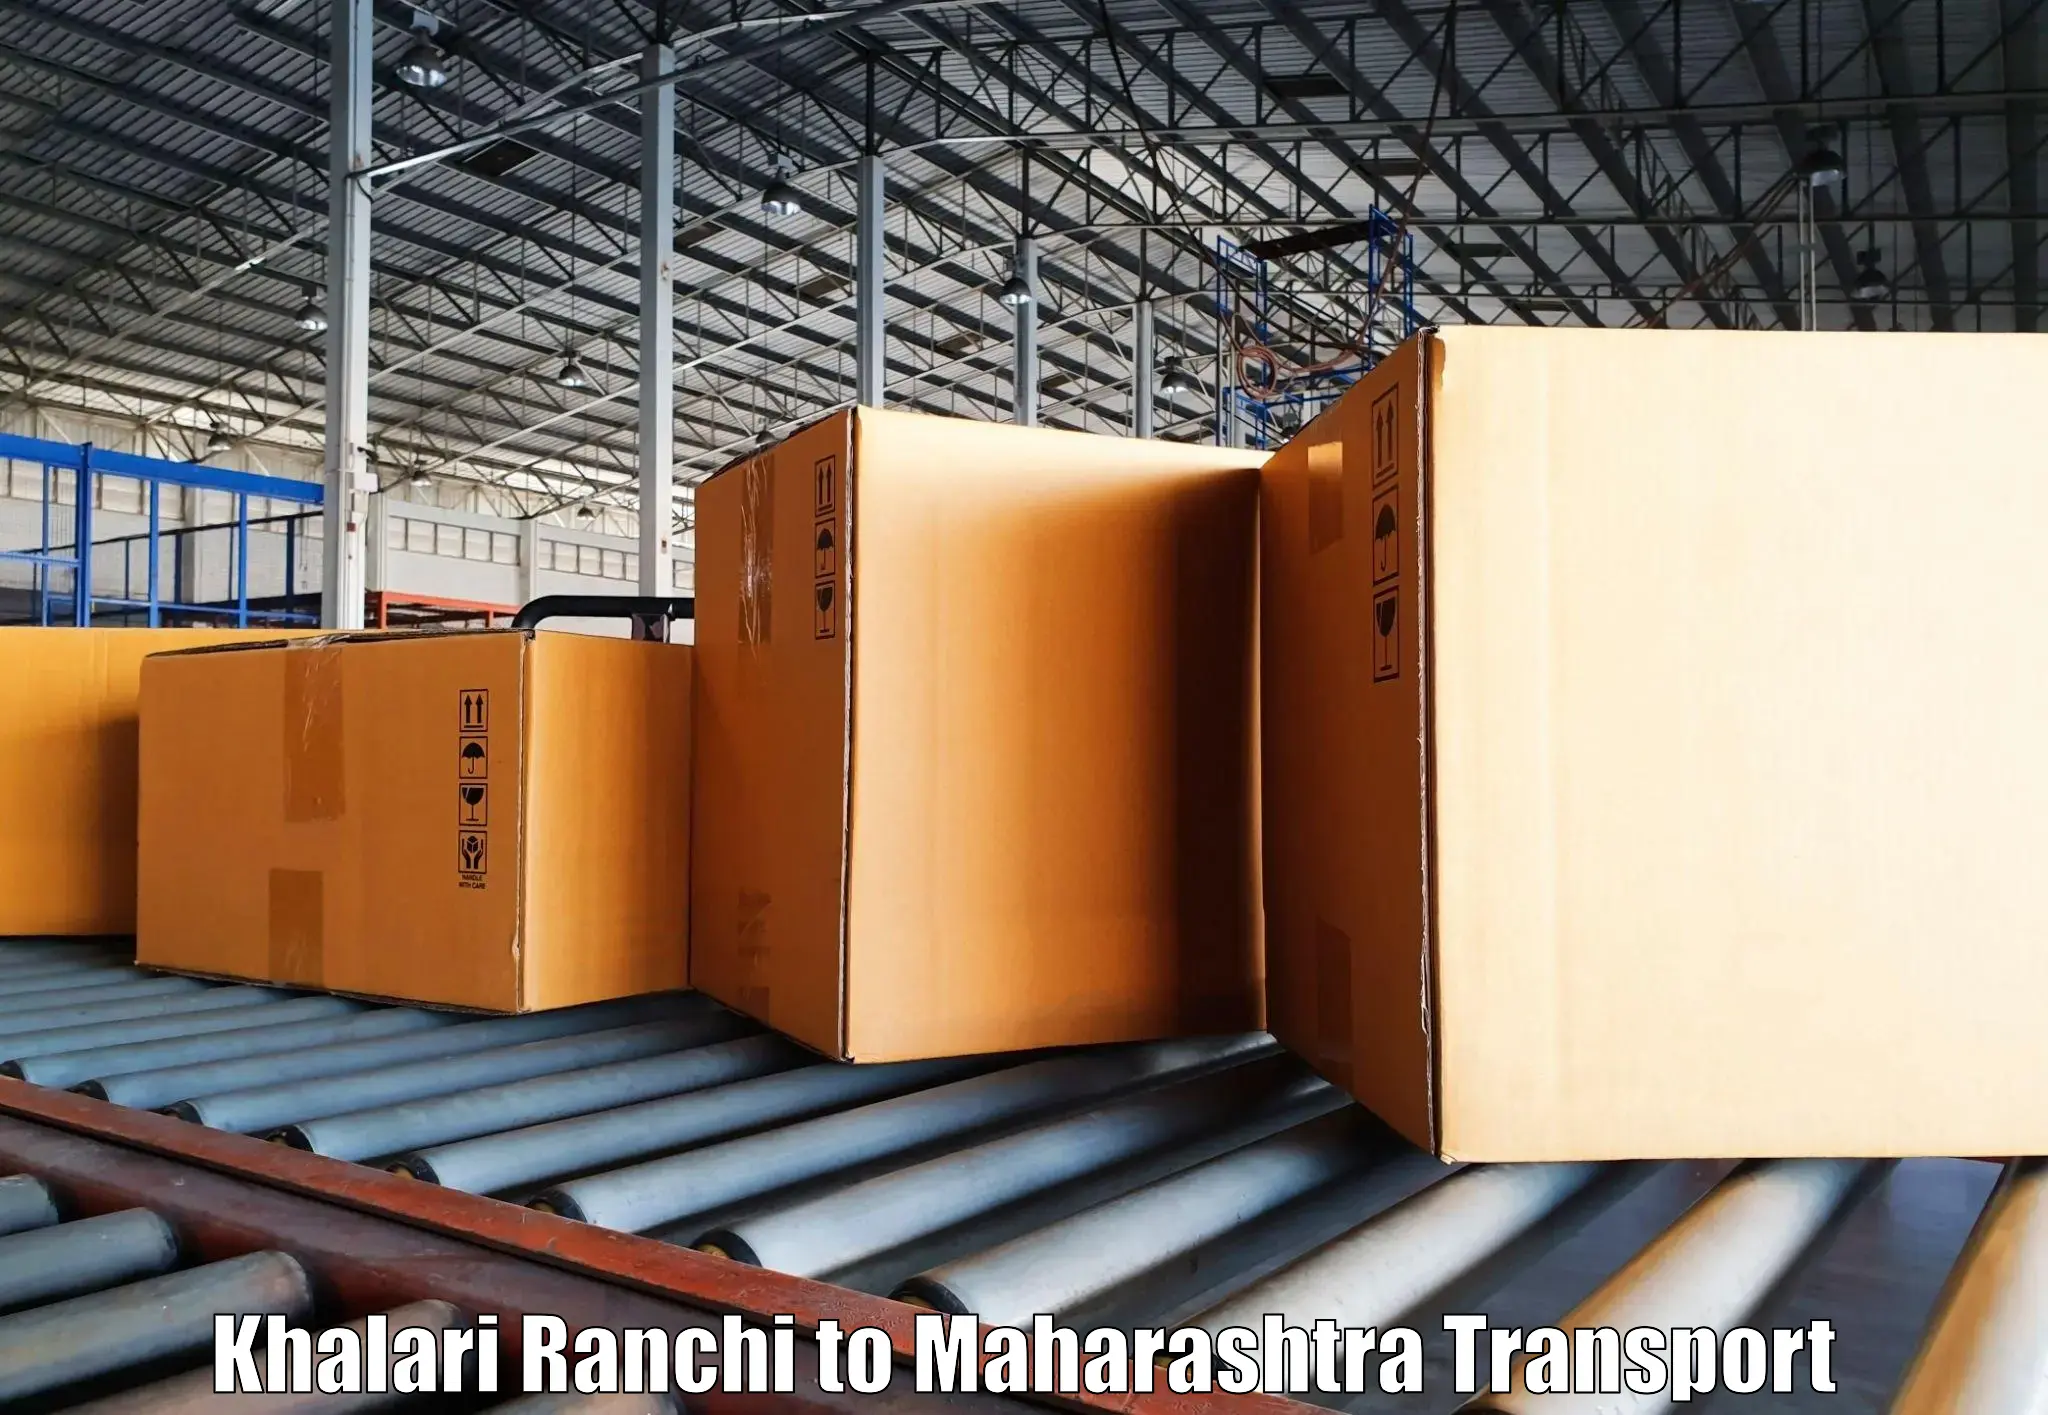 Interstate transport services Khalari Ranchi to Dadar